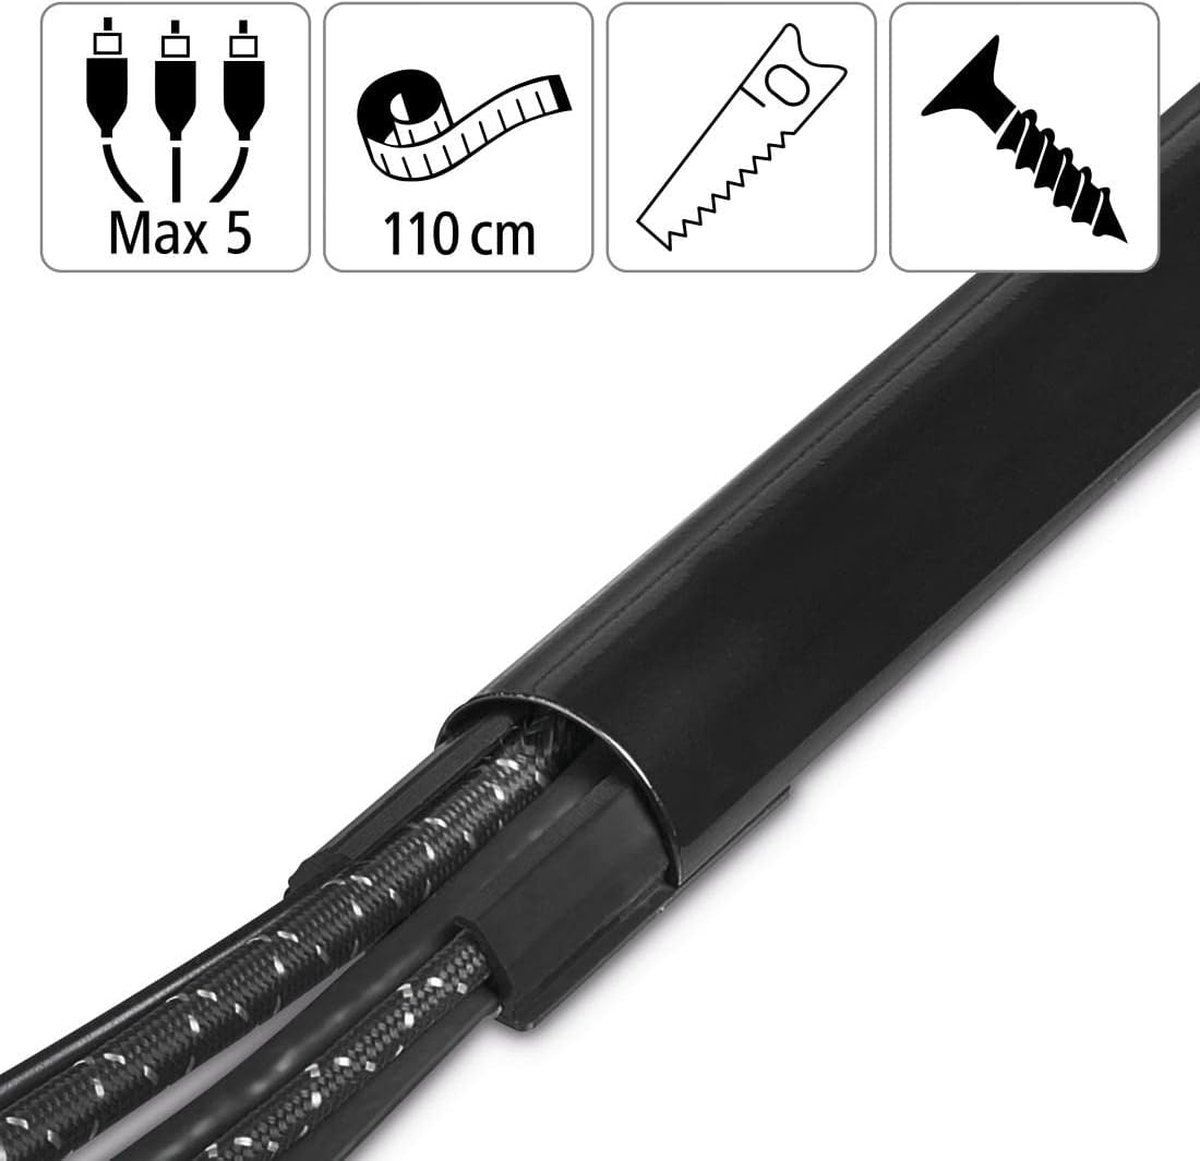 00083170 Kabelgoot aluminium, 110 x 3,3 x 1,8 cm, kabeldoorvoer voor maximaal 5 kabels, zwart